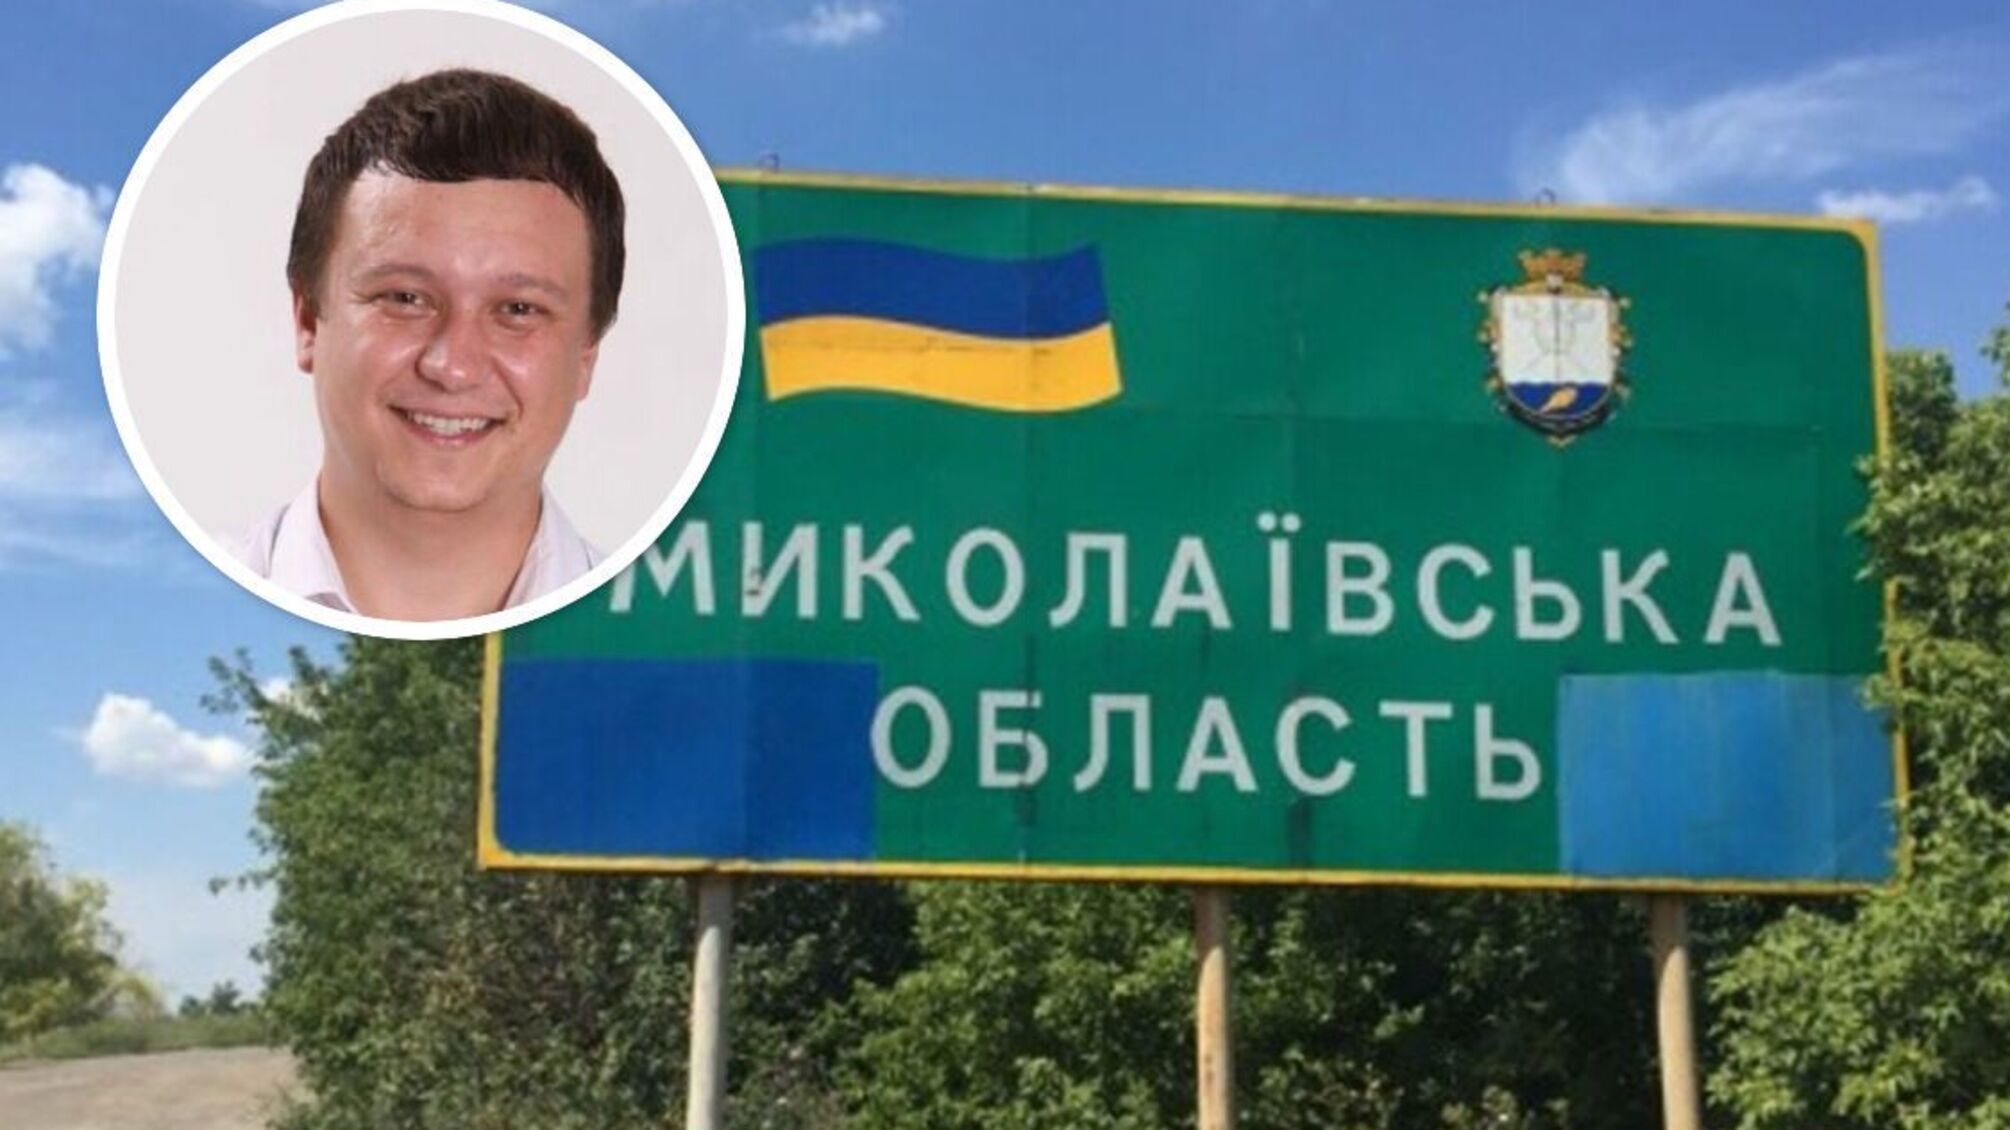 На Николаевщинне задержан вице-мэр Вознесенска Андрей Жуков - СМИ (есть заявление СБУ)